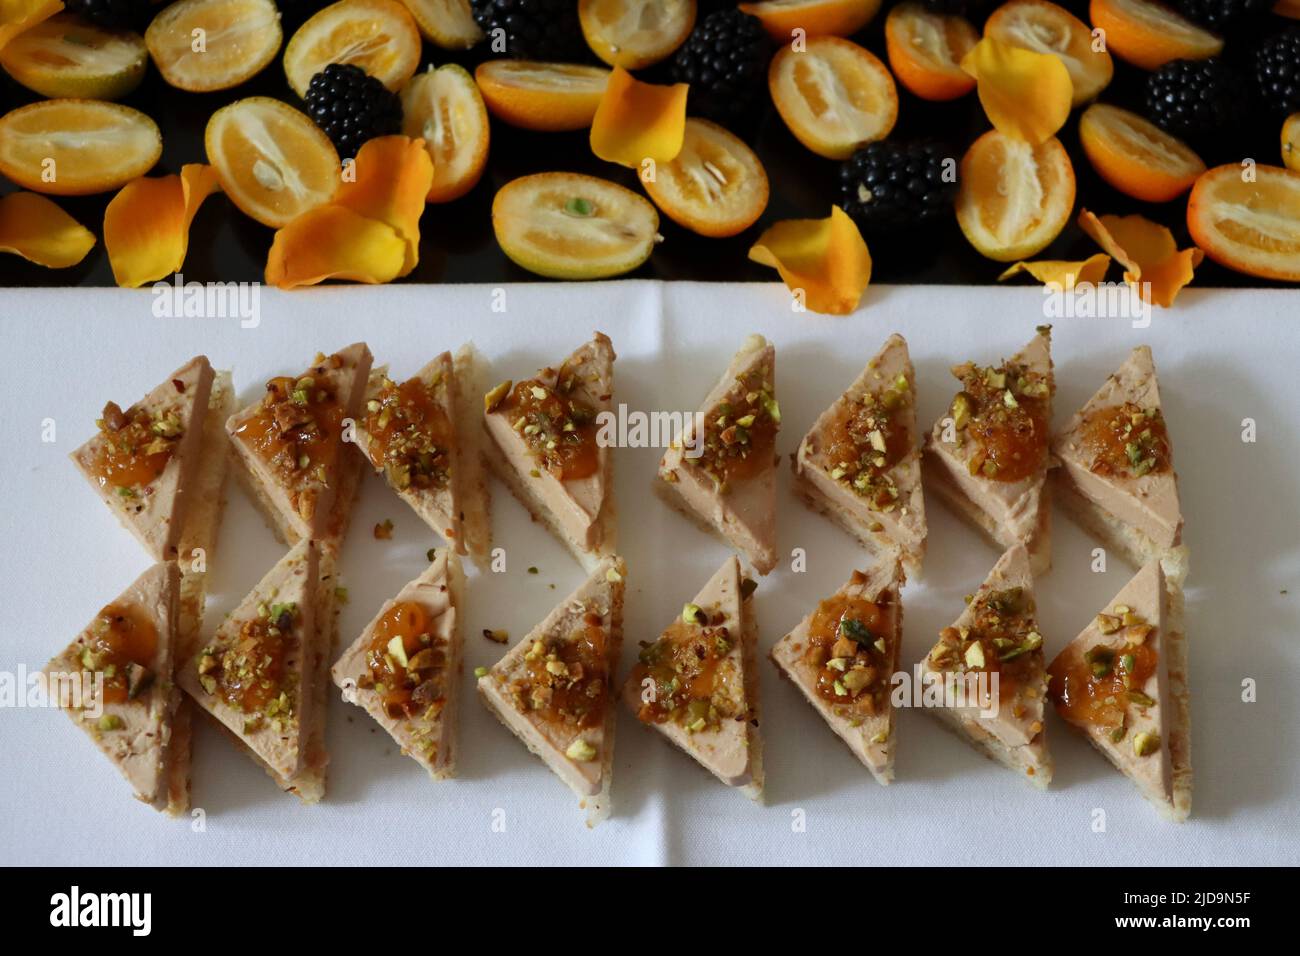 Canapés con foie gras en tostadas con mermelada de arándanos y nueces picadas en bandeja decorada con kumquats, moras y pétalos de rosa amarilla Foto de stock